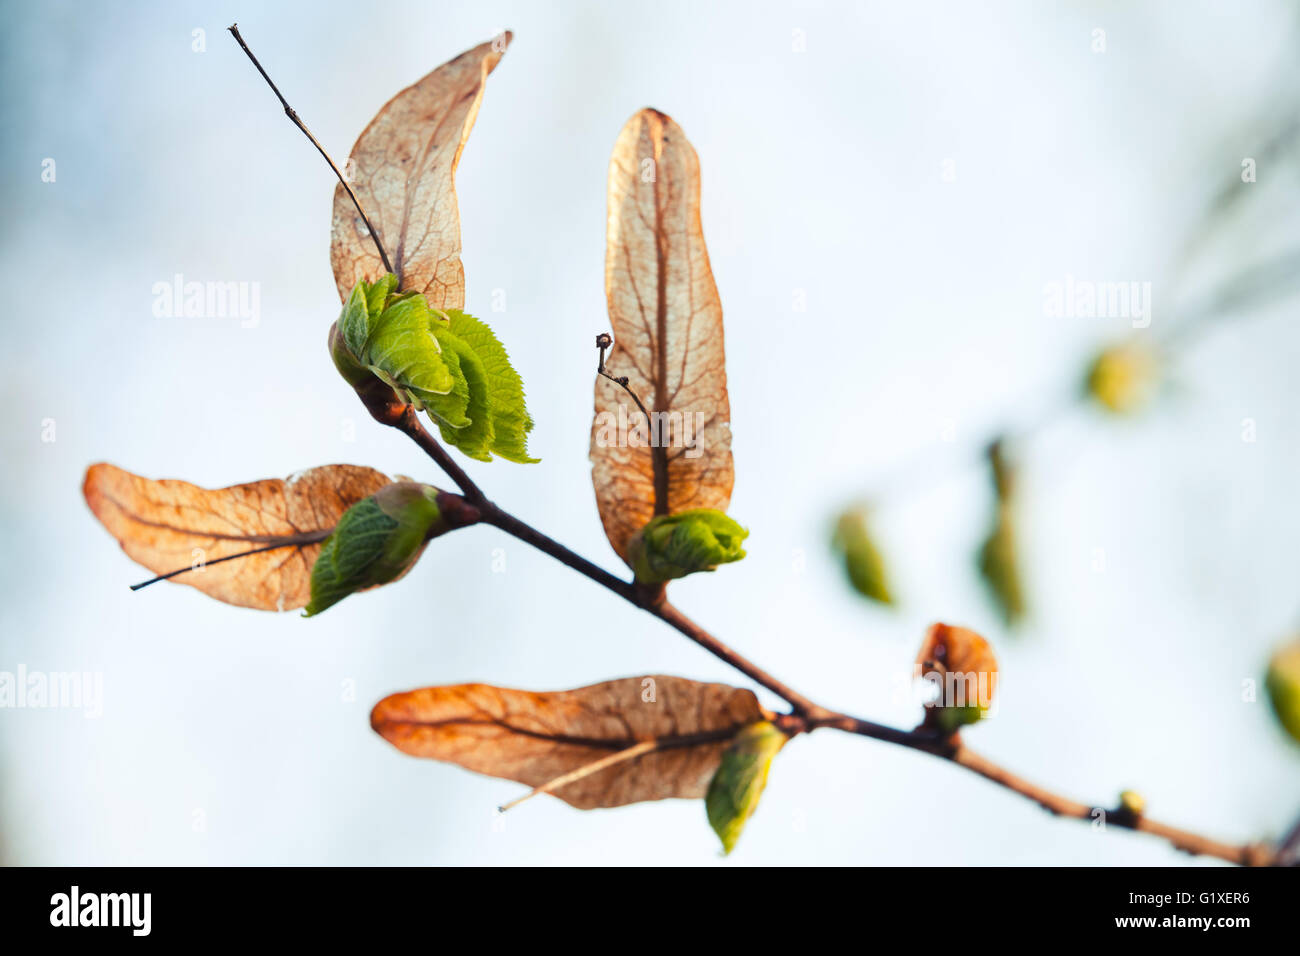 Nouvelles fraîches feuilles de l'arbre vert près de plus en plus vieux, sec, photo de fond naturel de la saison du printemps. Photo Gros Plan avec selective focus Banque D'Images